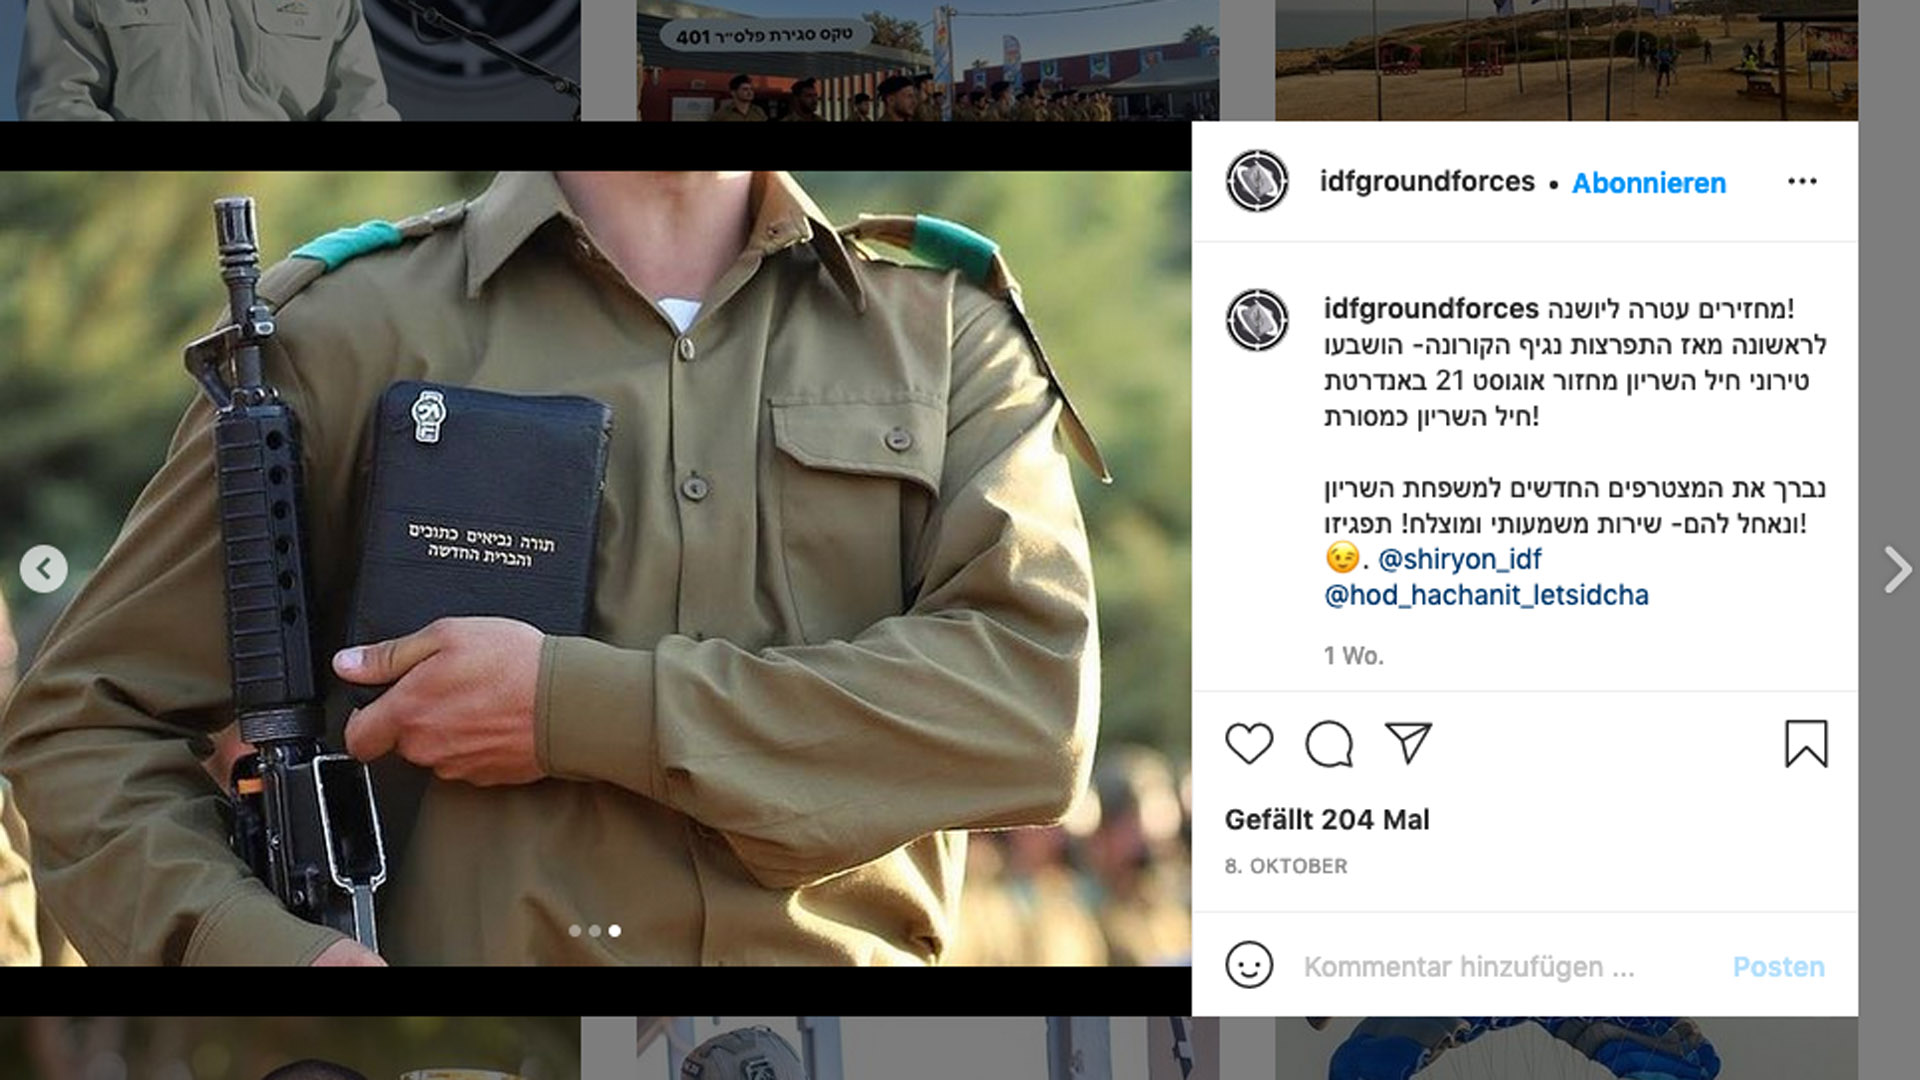 Der Soldat hat seinen Eid auf eine christliche Bibel in hebräischer Sprache abgelegt